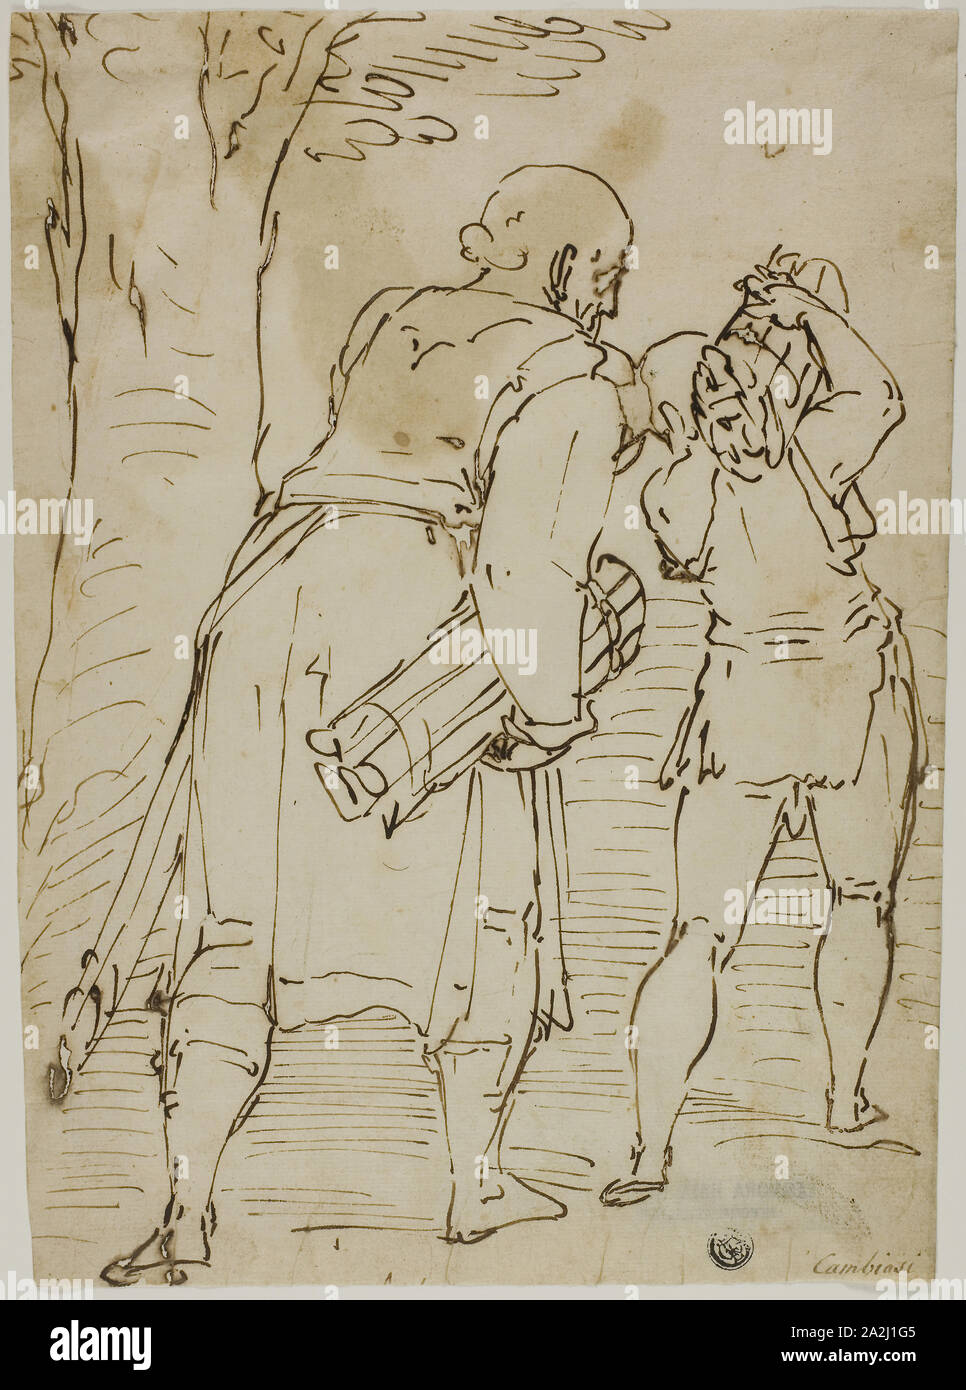 Abraham et Isaac, ch. 1570, attribué à Luca Cambiaso, italien, 1527-1585, l'Italie, la plume et l'encre de noix de galle sur papier vergé ivoire, 286 x 212 mm (max. Banque D'Images